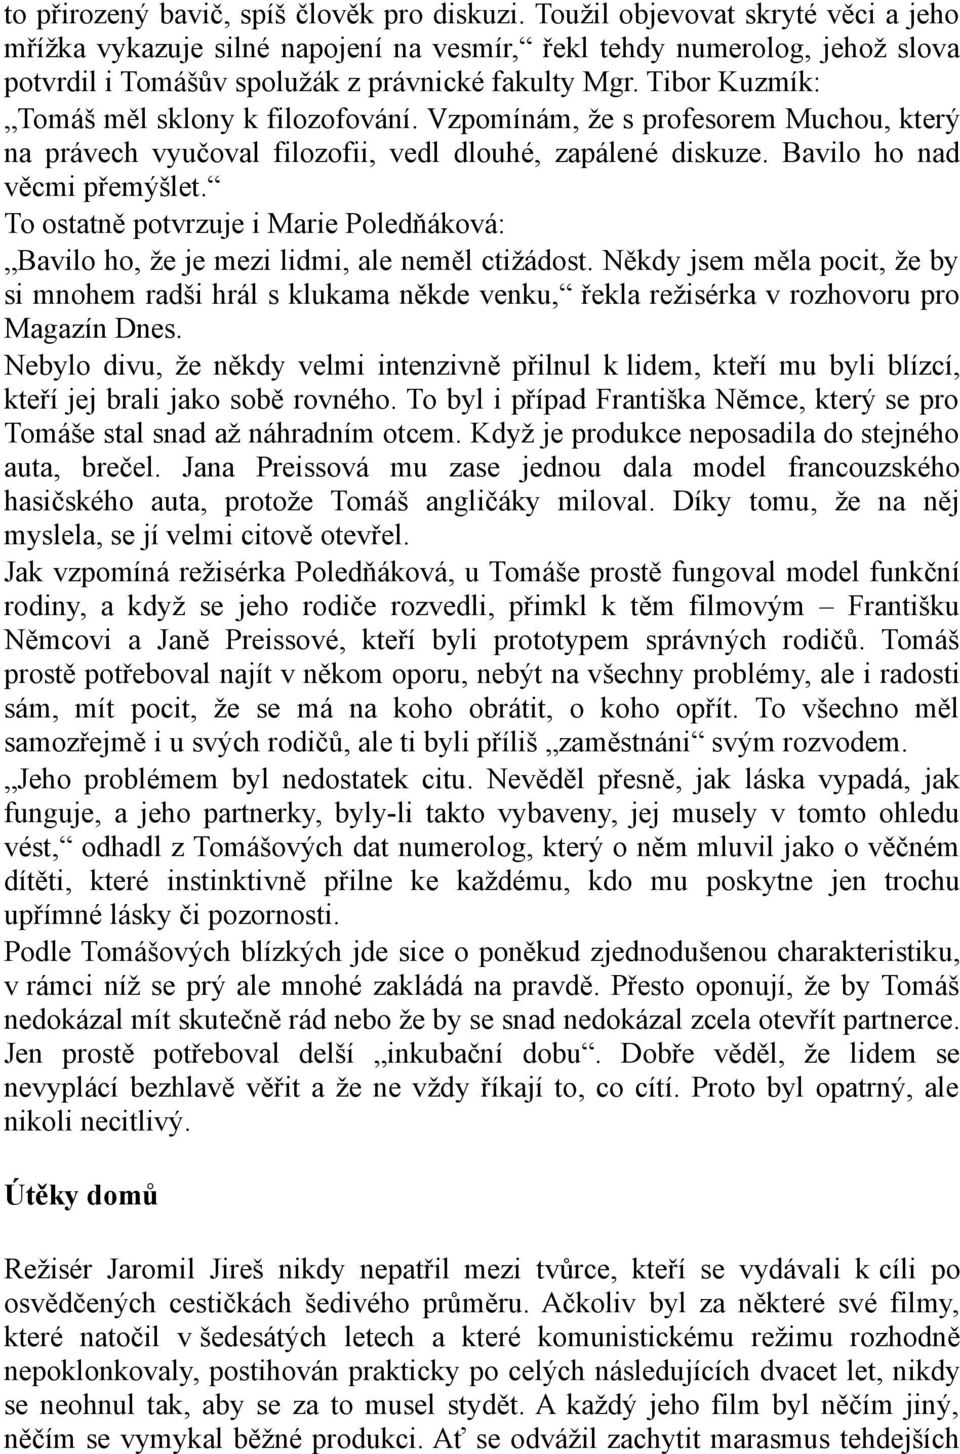 Tibor Kuzmík: Tomáš měl sklony k filozofování. Vzpomínám, že s profesorem Muchou, který na právech vyučoval filozofii, vedl dlouhé, zapálené diskuze. Bavilo ho nad věcmi přemýšlet.